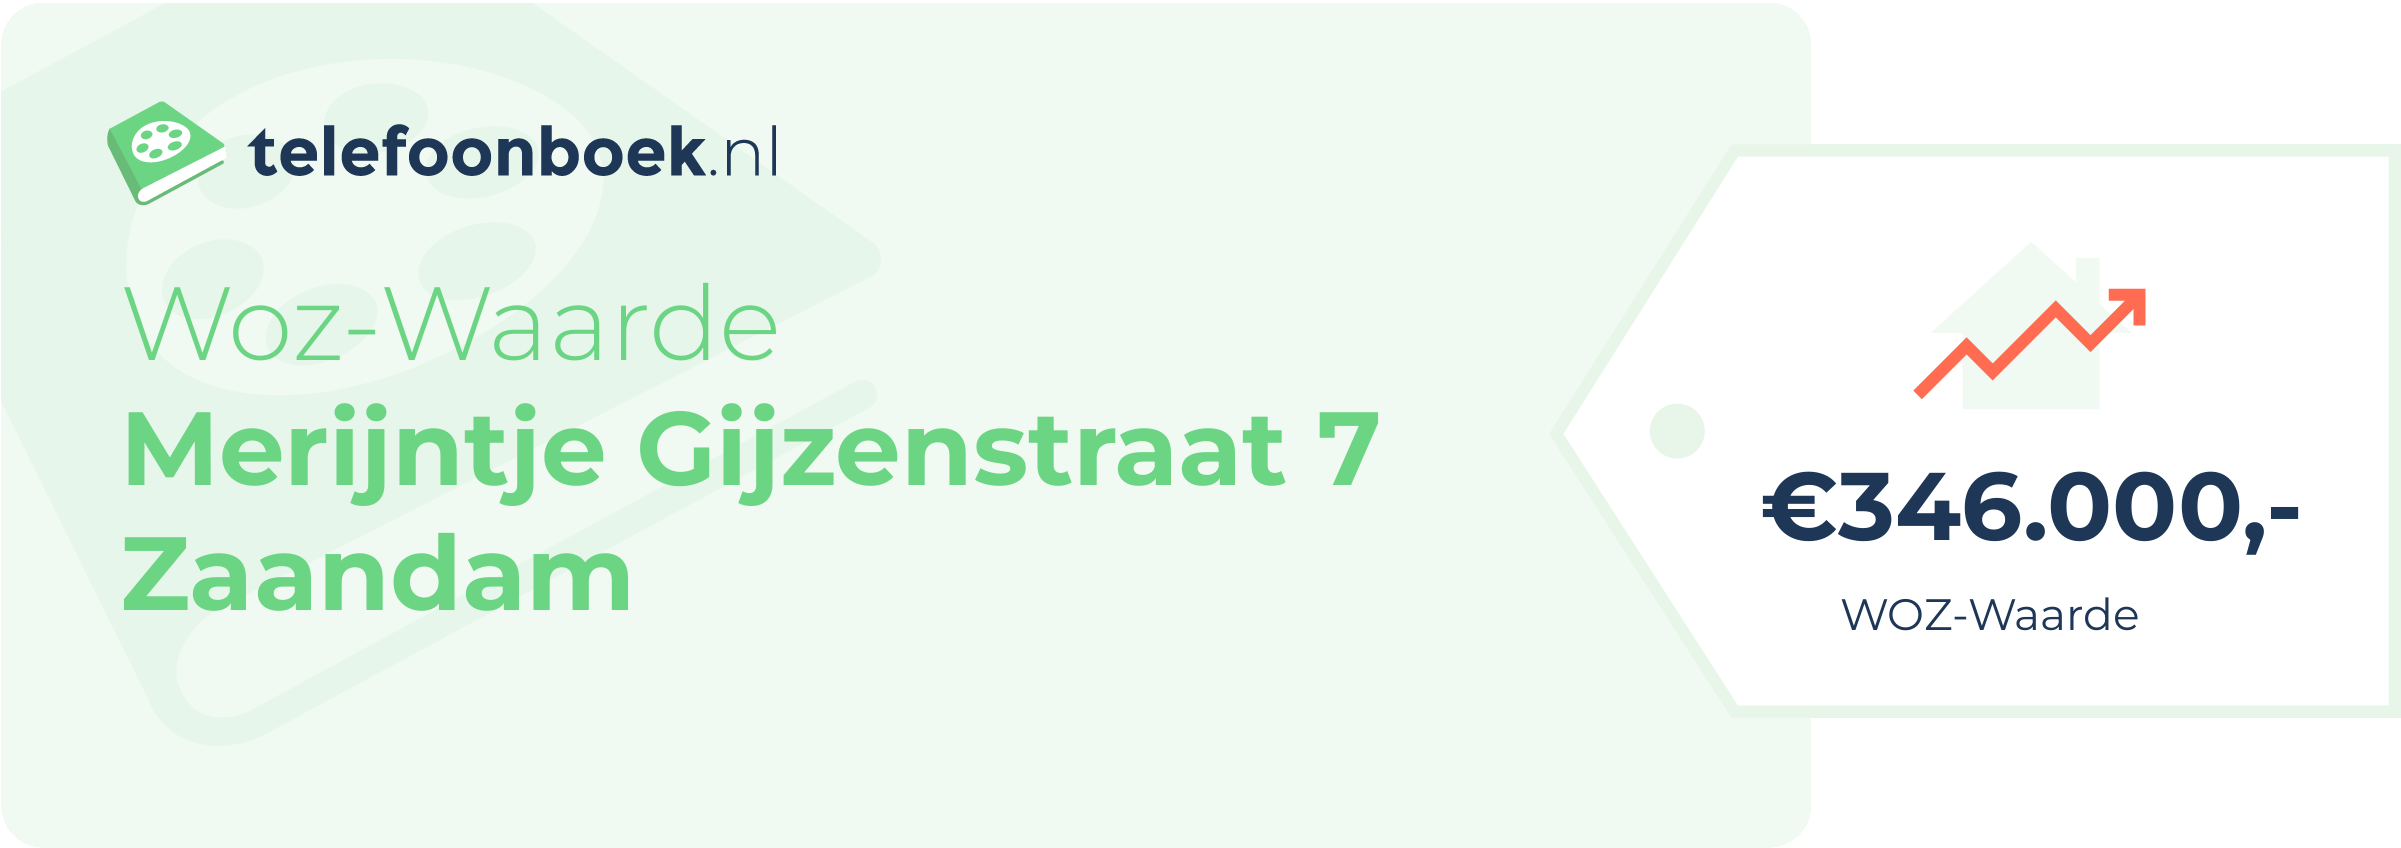 WOZ-waarde Merijntje Gijzenstraat 7 Zaandam